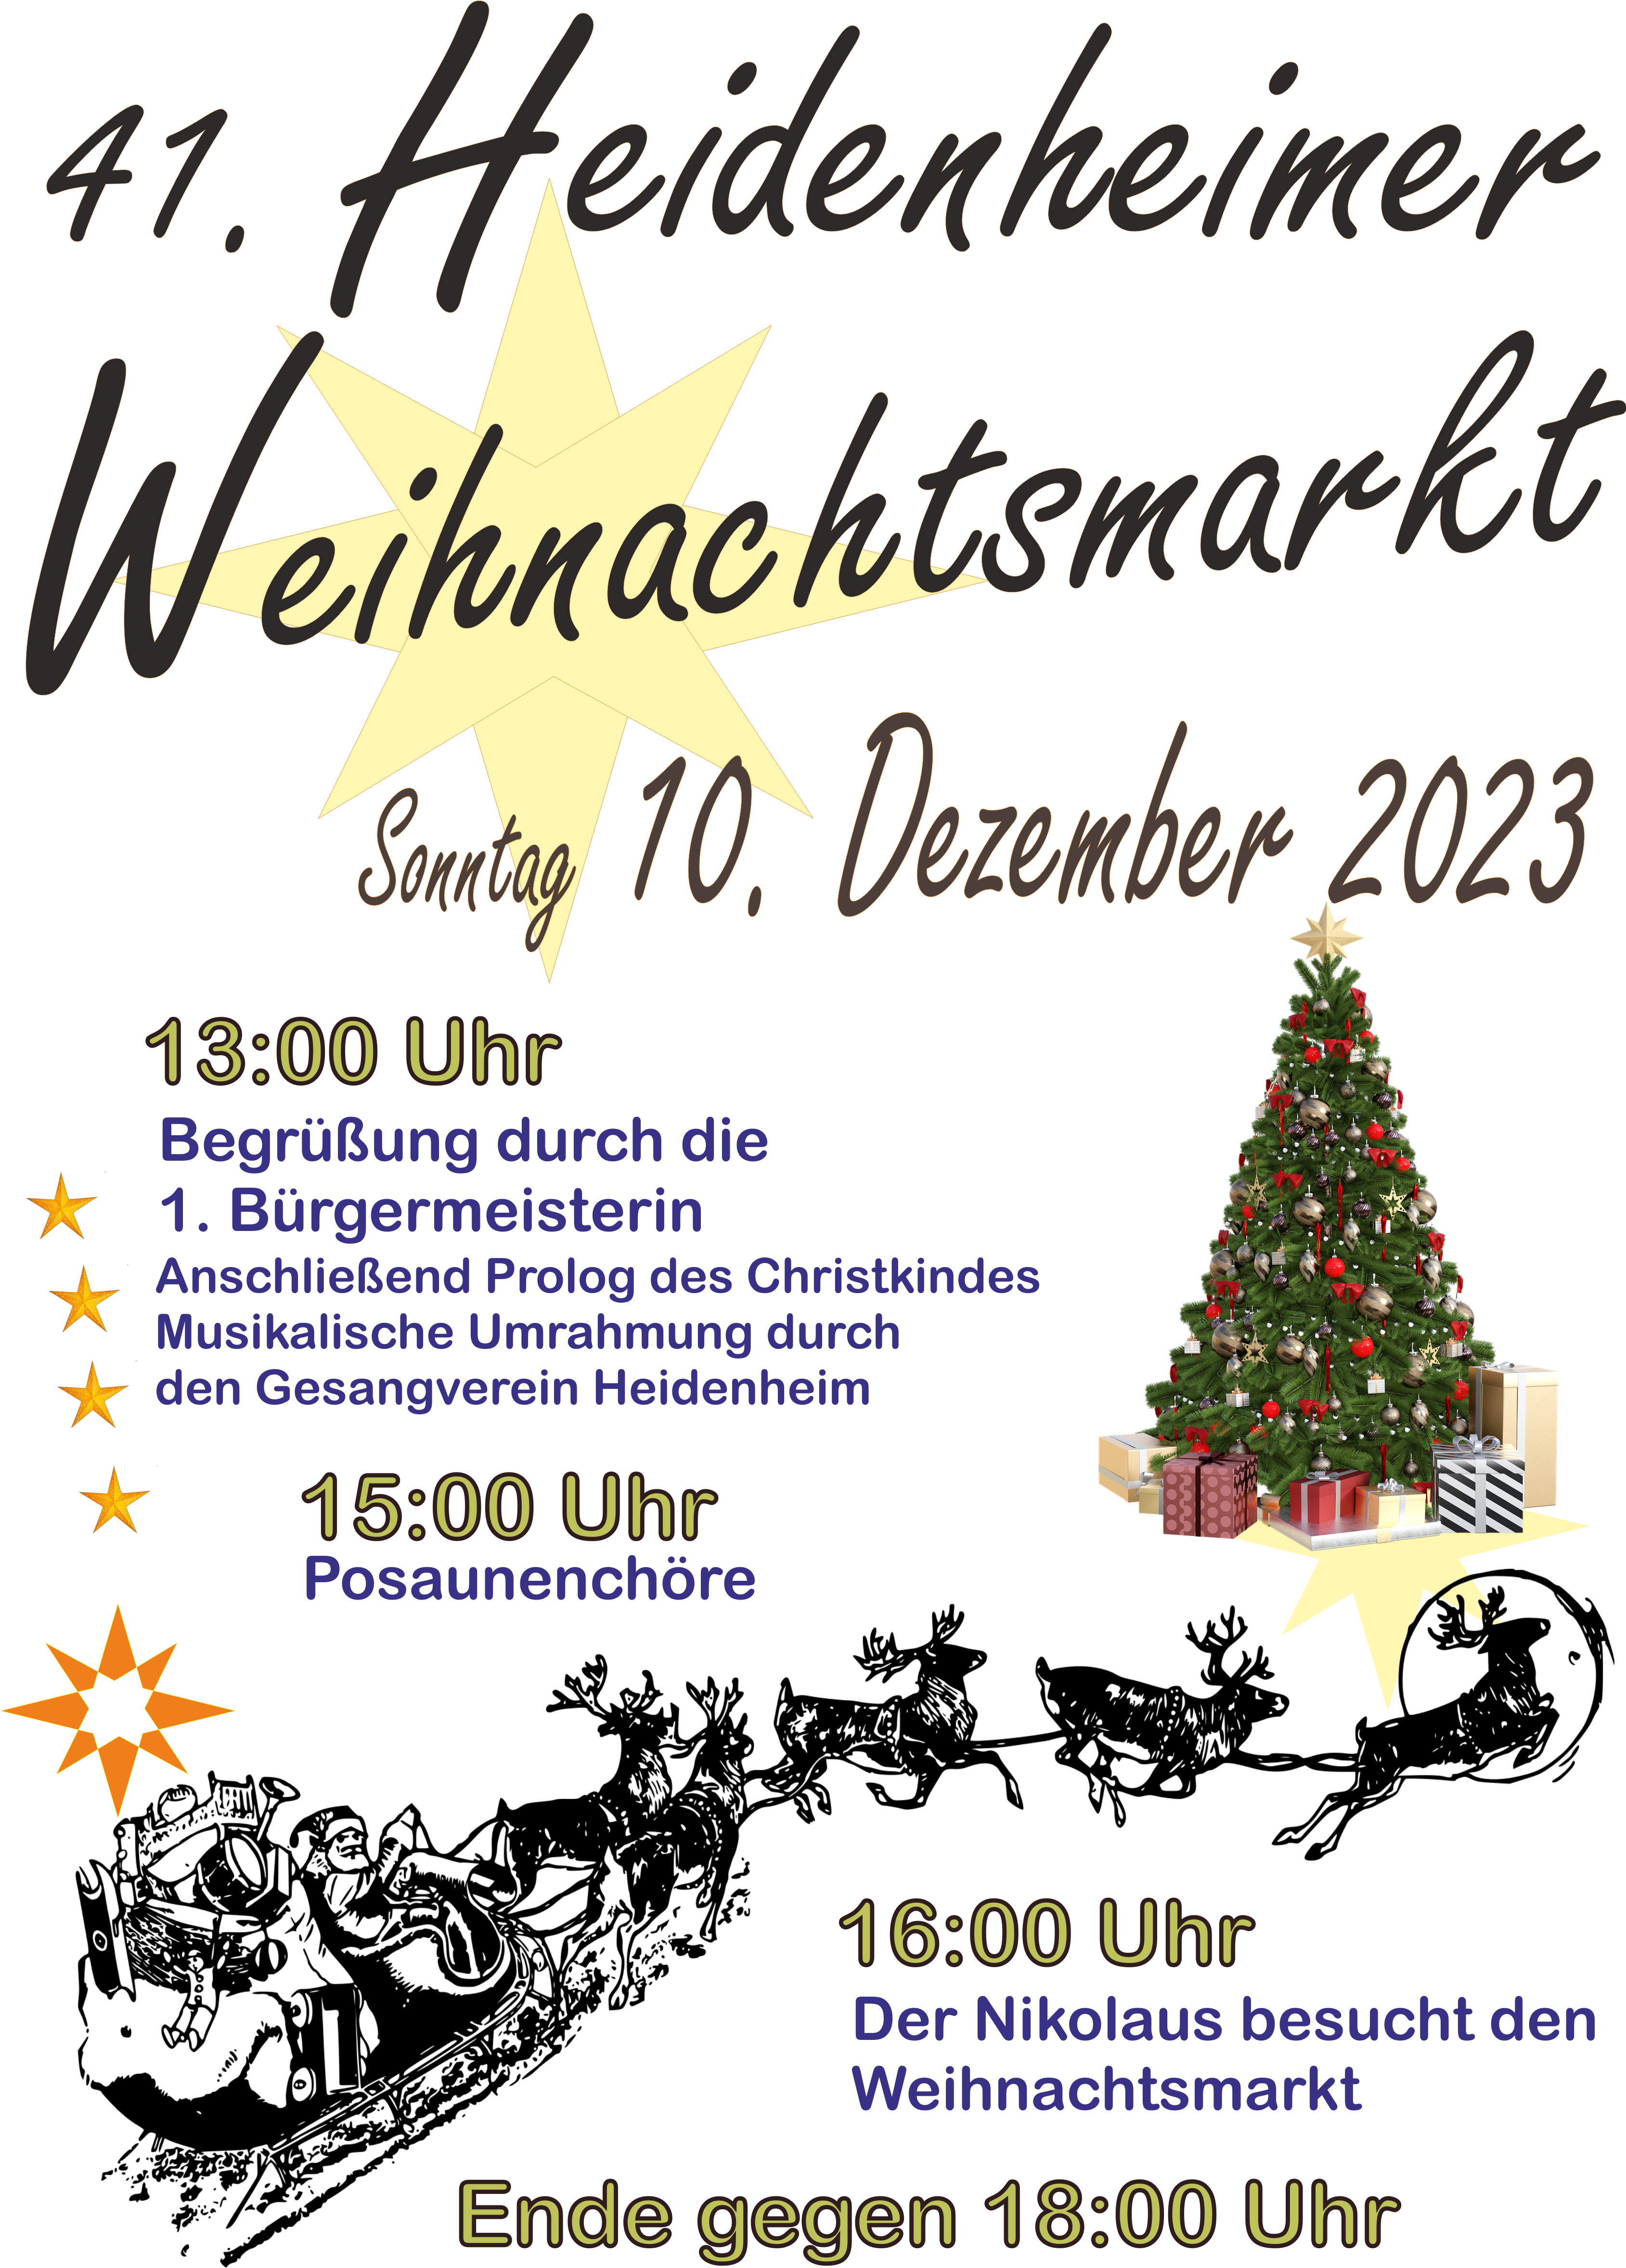 Heidenheimer Weihnachtsmarkt